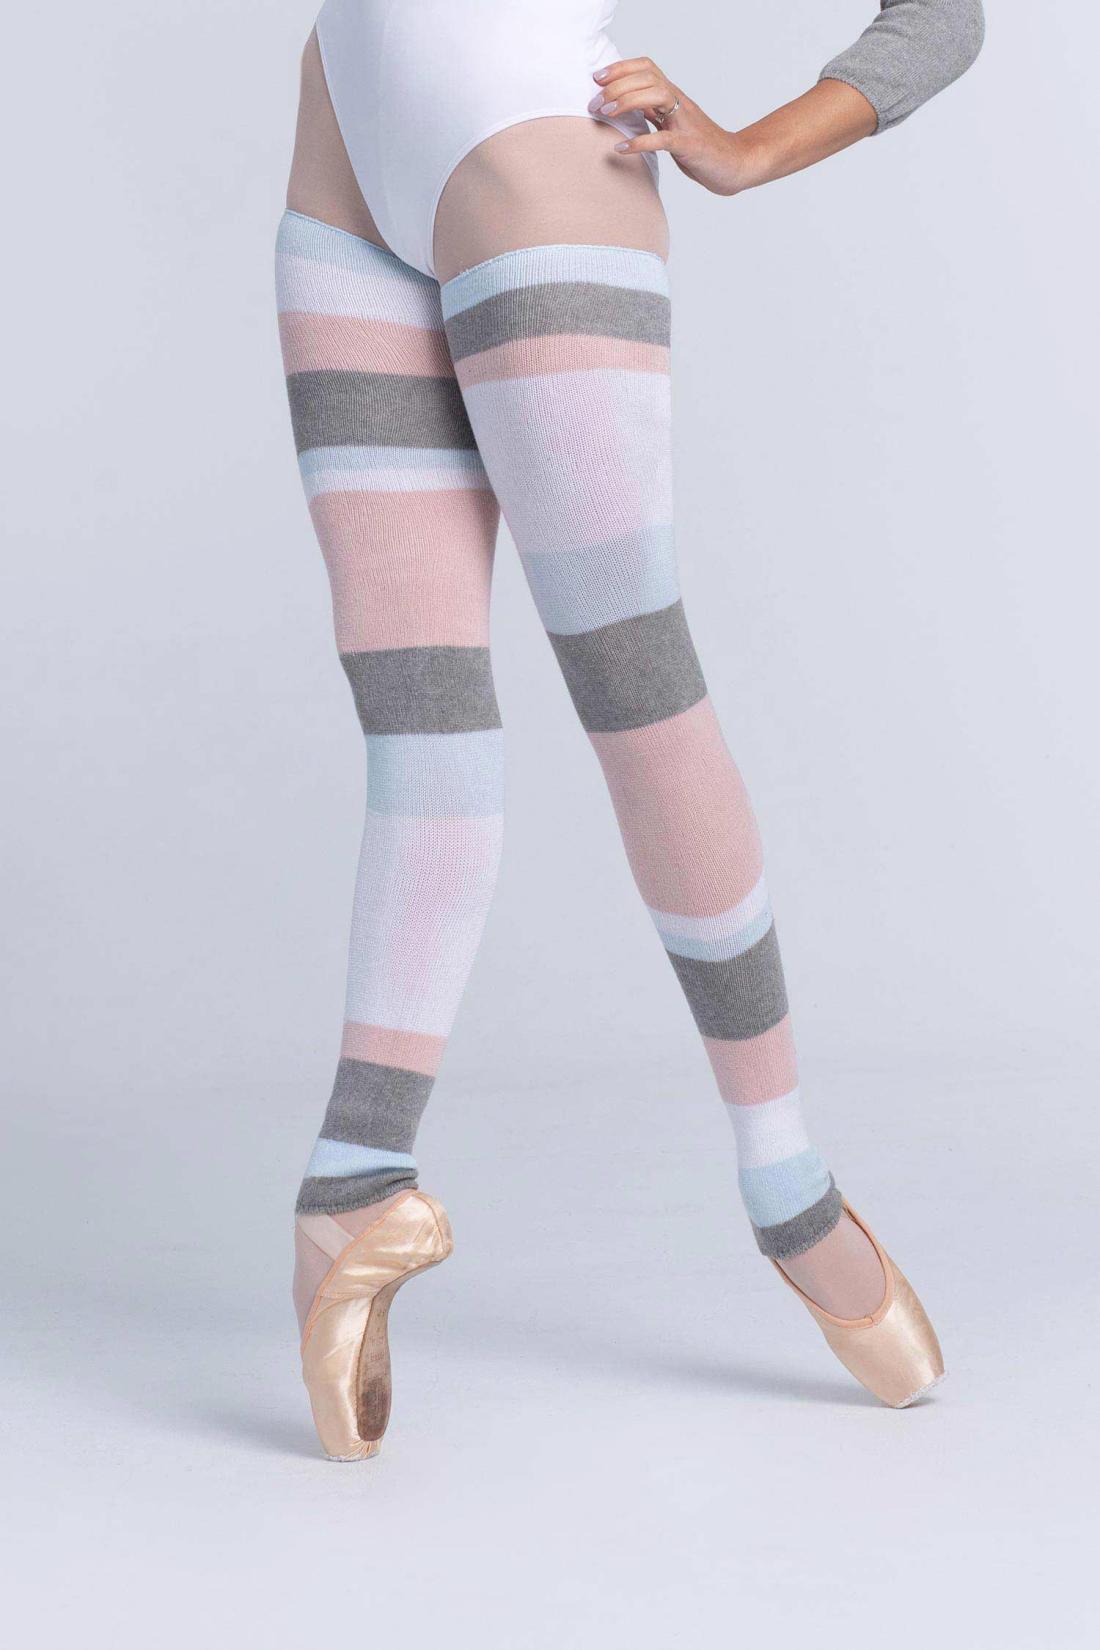 Large Cotton leg warmers with asymmetric stripes Intermezzo dancewear ballet